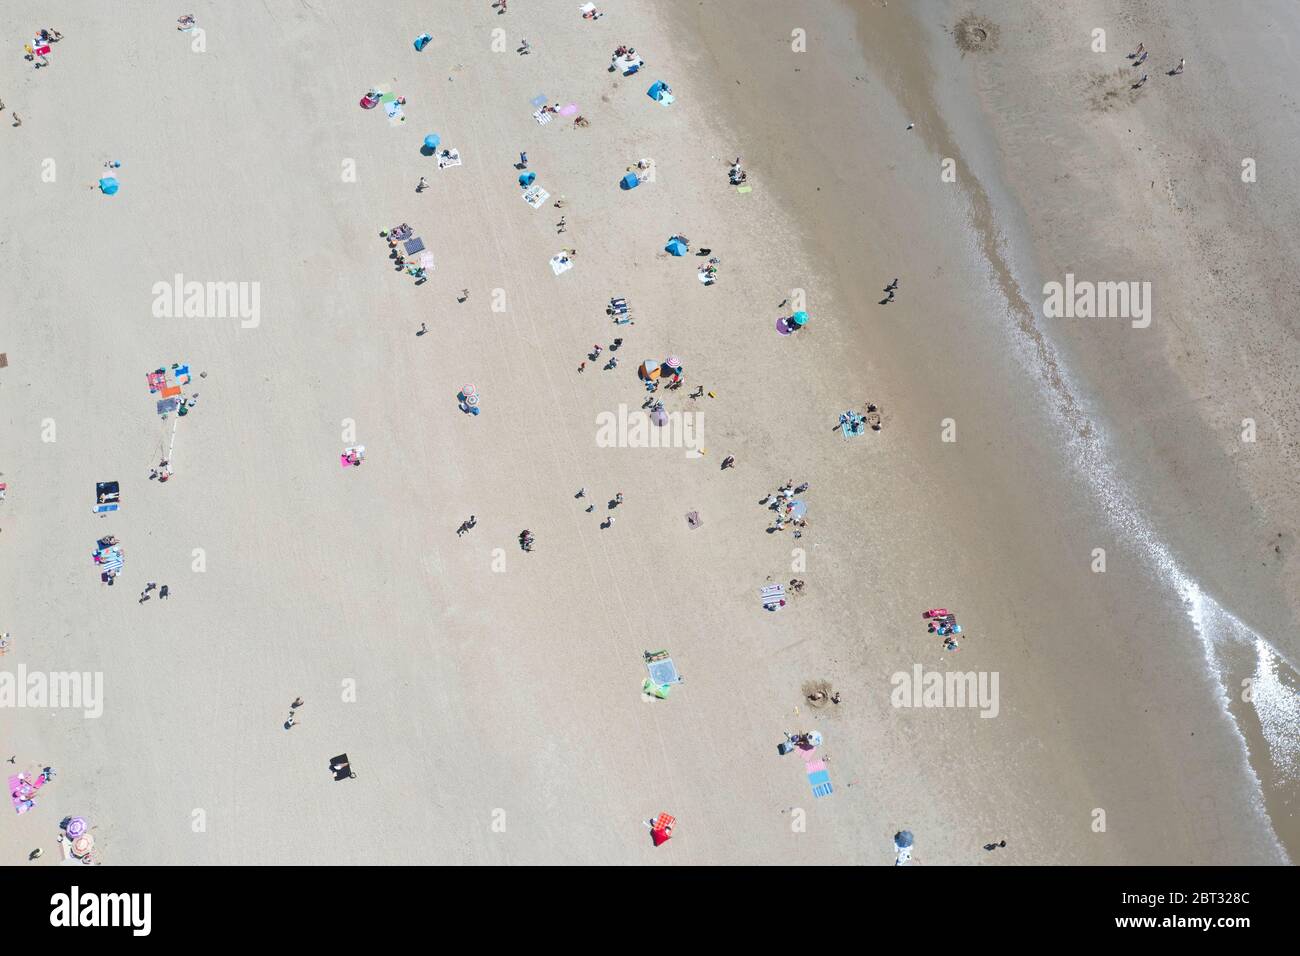 foto astratta della spiaggia aerea di persone che prendono il sole sulla spiaggia Foto Stock